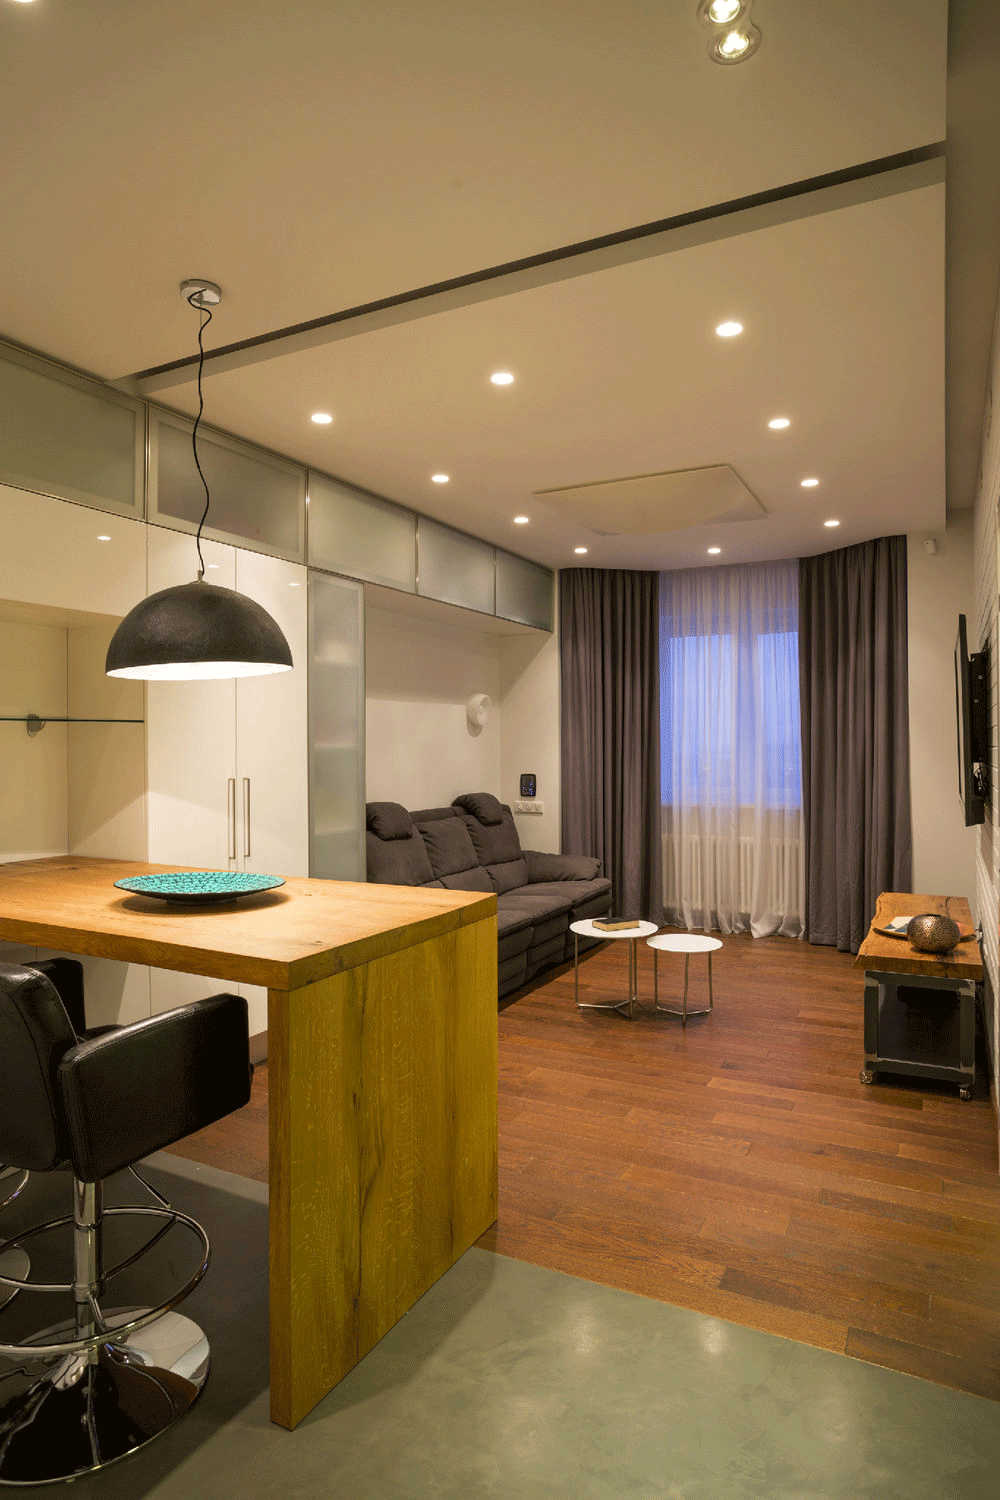 Дизайн квартир с подсветкой